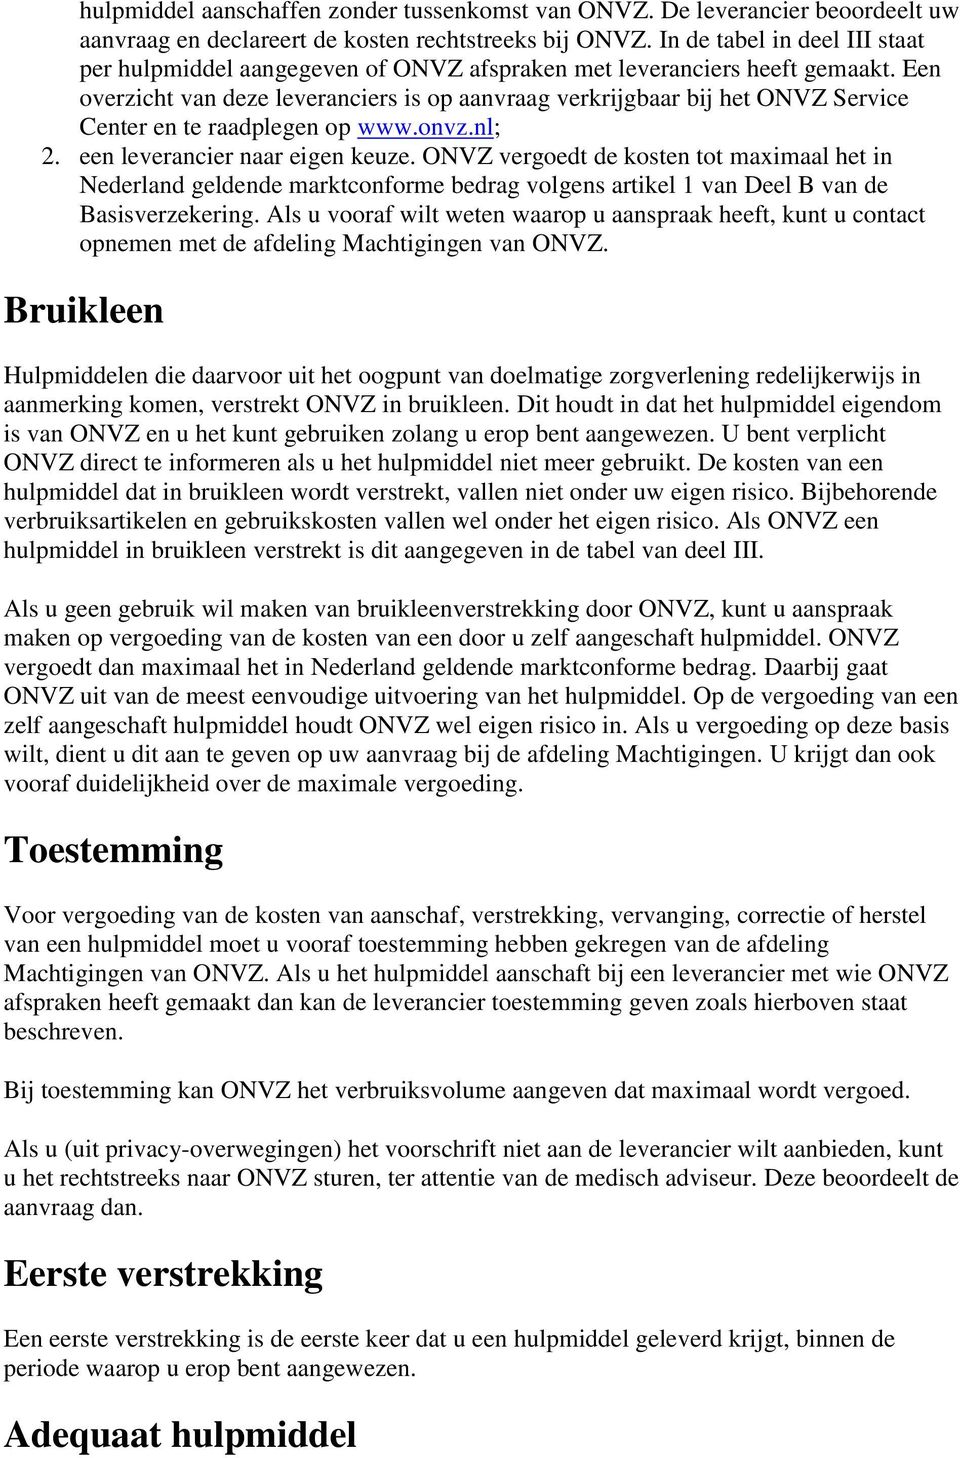 Een overzicht van deze leveranciers is op aanvraag verkrijgbaar bij het ONVZ Service Center en te raadplegen op www.onvz.nl; 2. een leverancier naar eigen keuze.